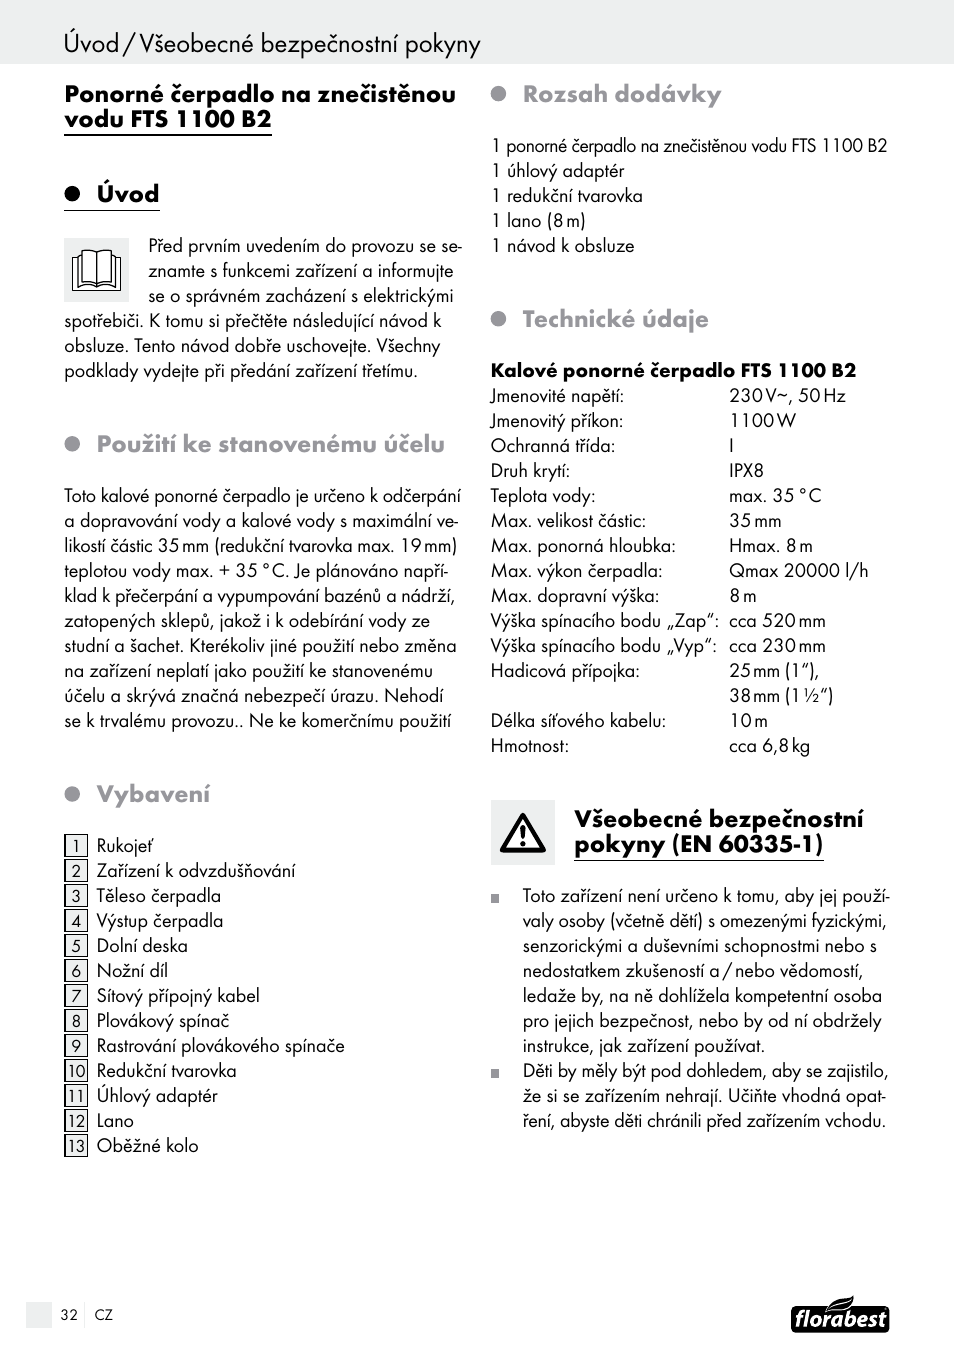 Použití ke stanovenému účelu, Vybavení, Rozsah dodávky | Florabest FTS 1100  B2 User Manual | Page 32 / 50